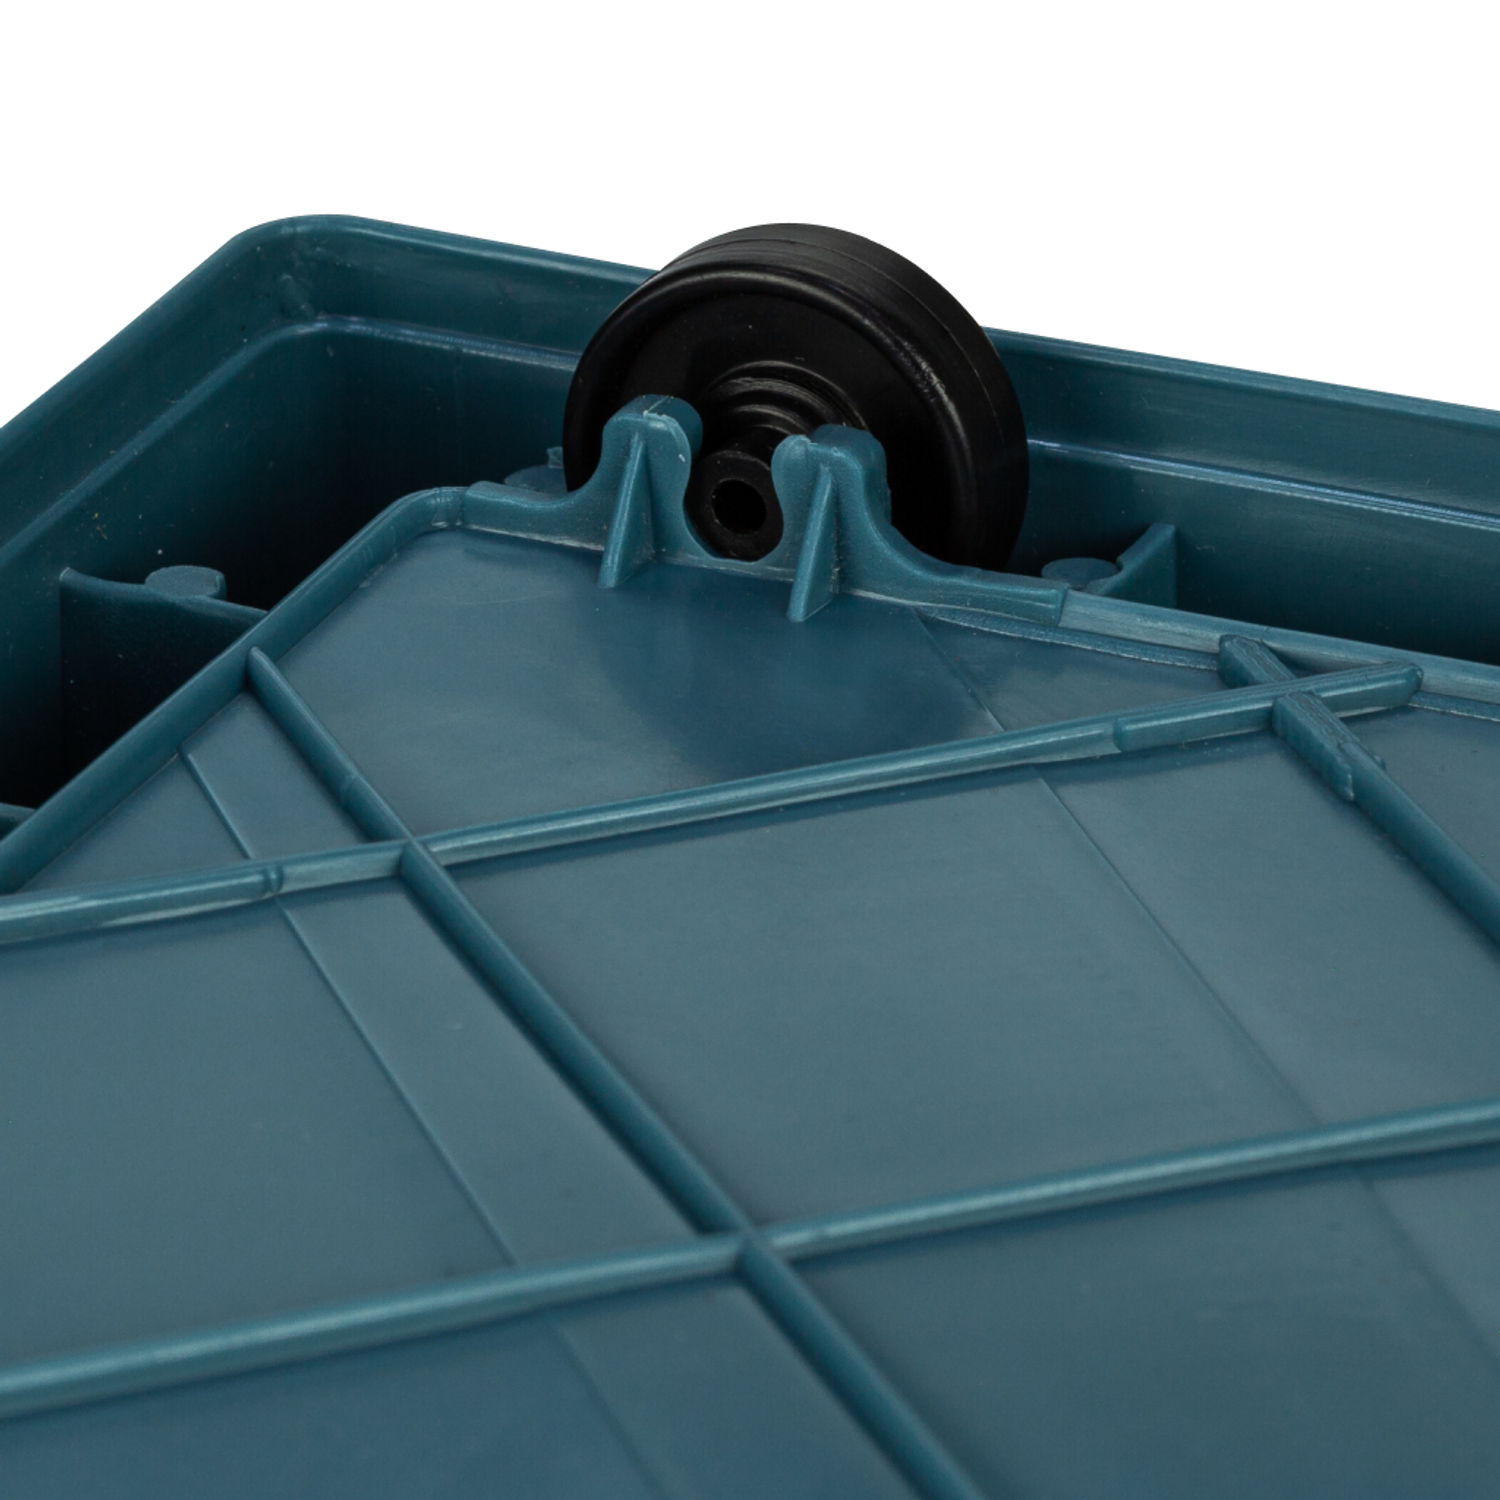 Ящик для хранения вещей Solmax прозрачный контейнер с крышкой на колесах 60х42х35 голубой - фото 9